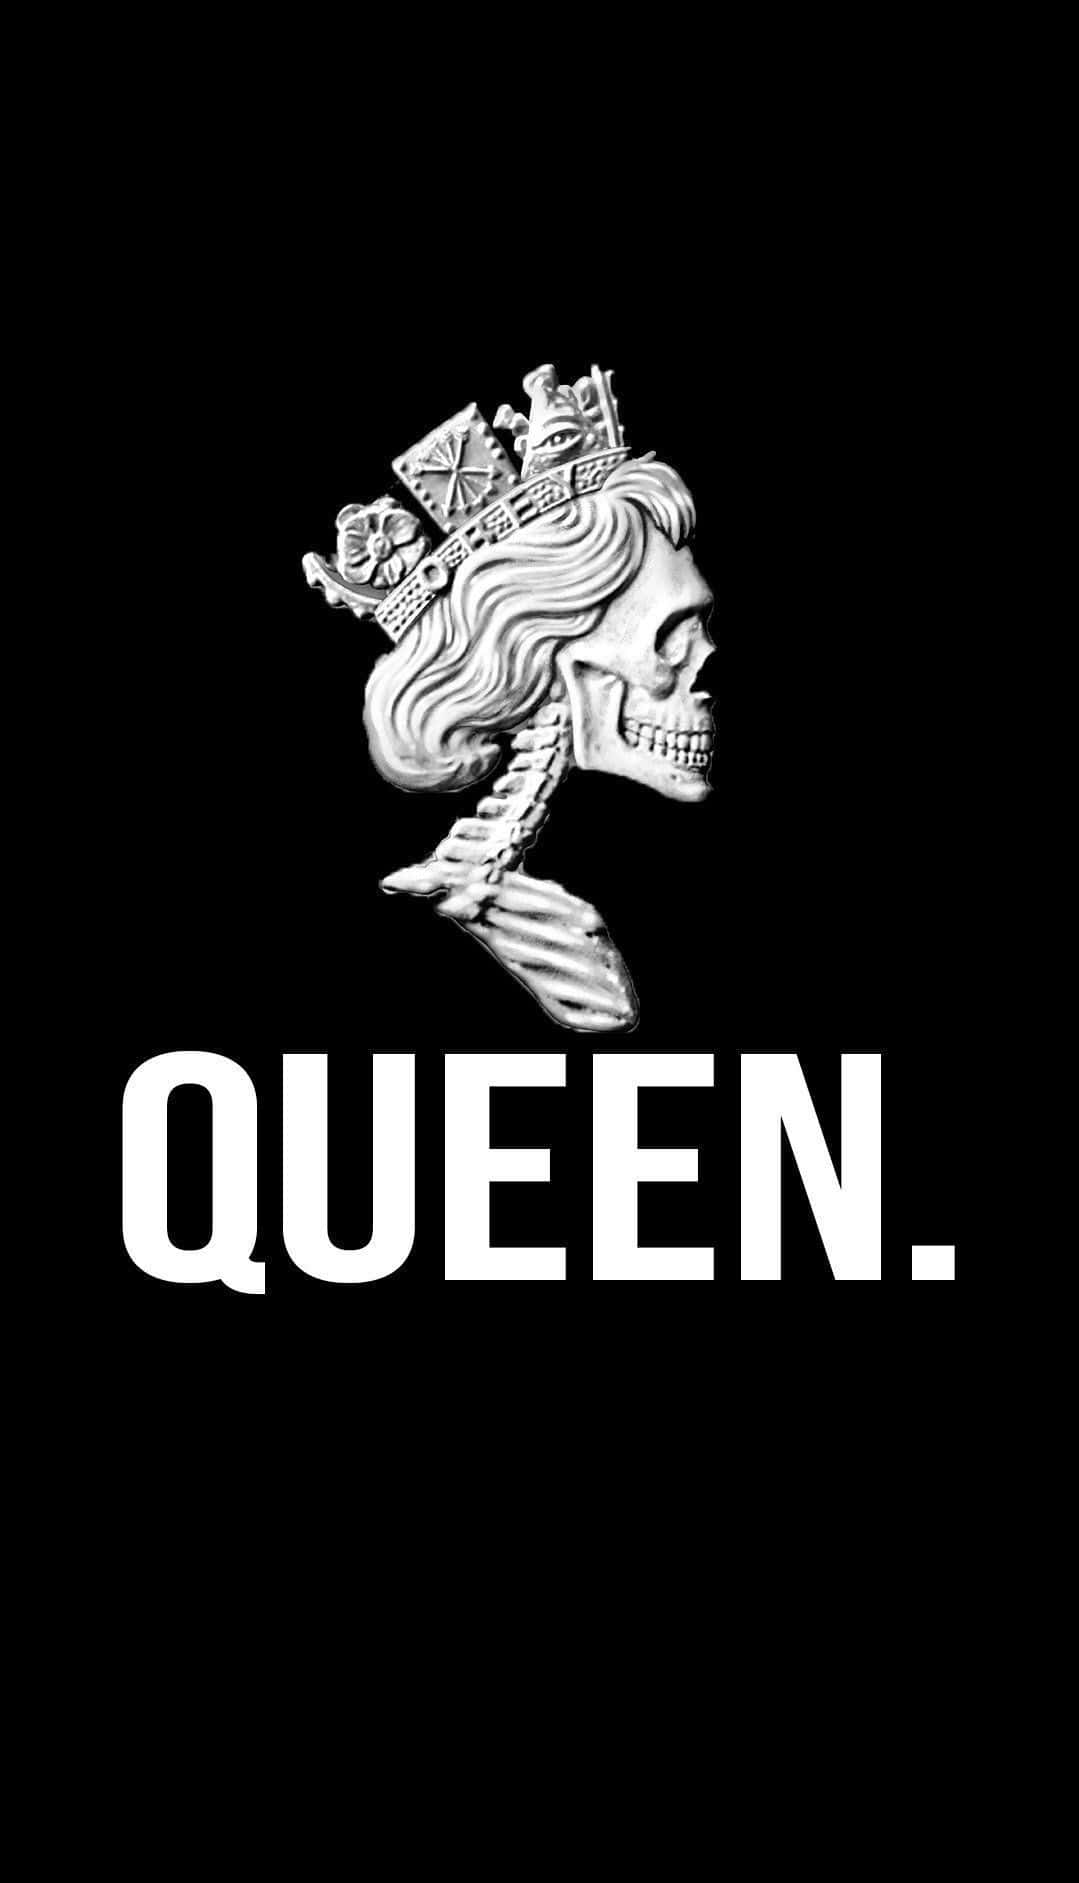 Dielegendäre Rockband Queen Bringt Die Menge Zum Leben.